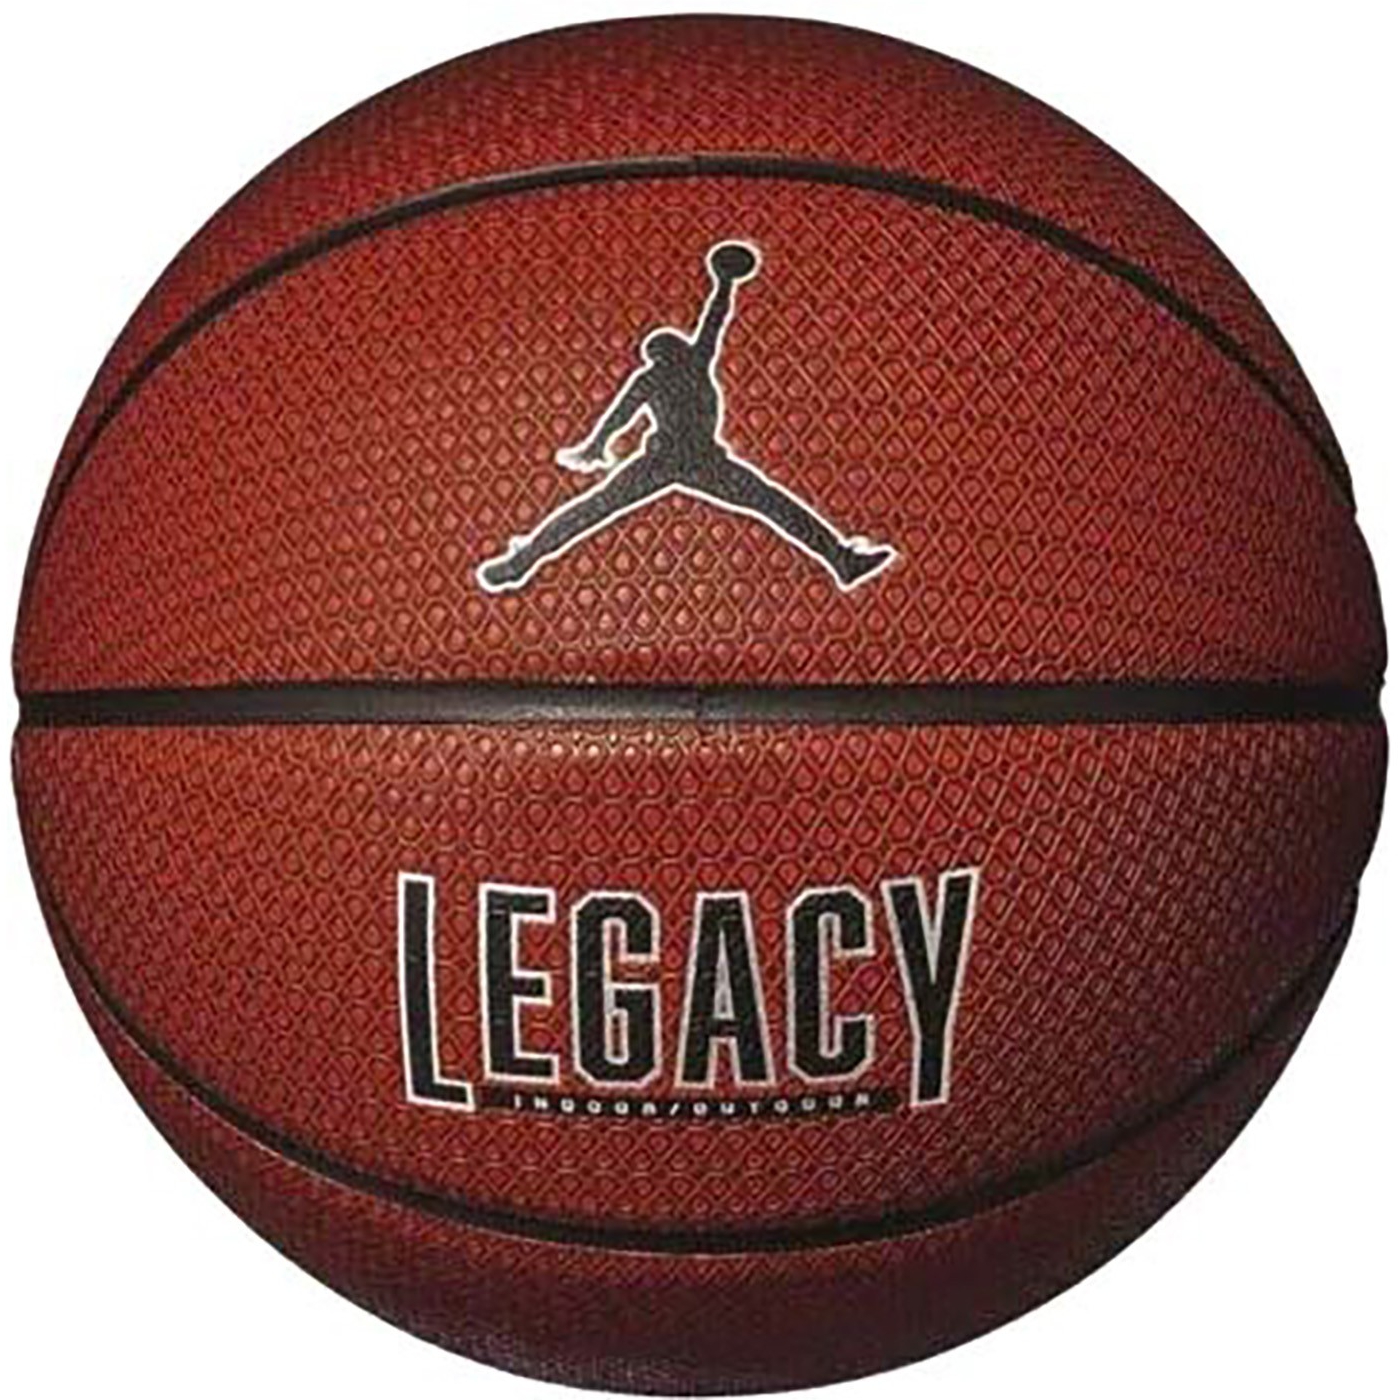 Баскетбольный мяч Jordan Legacy 2.0 8p - картинка